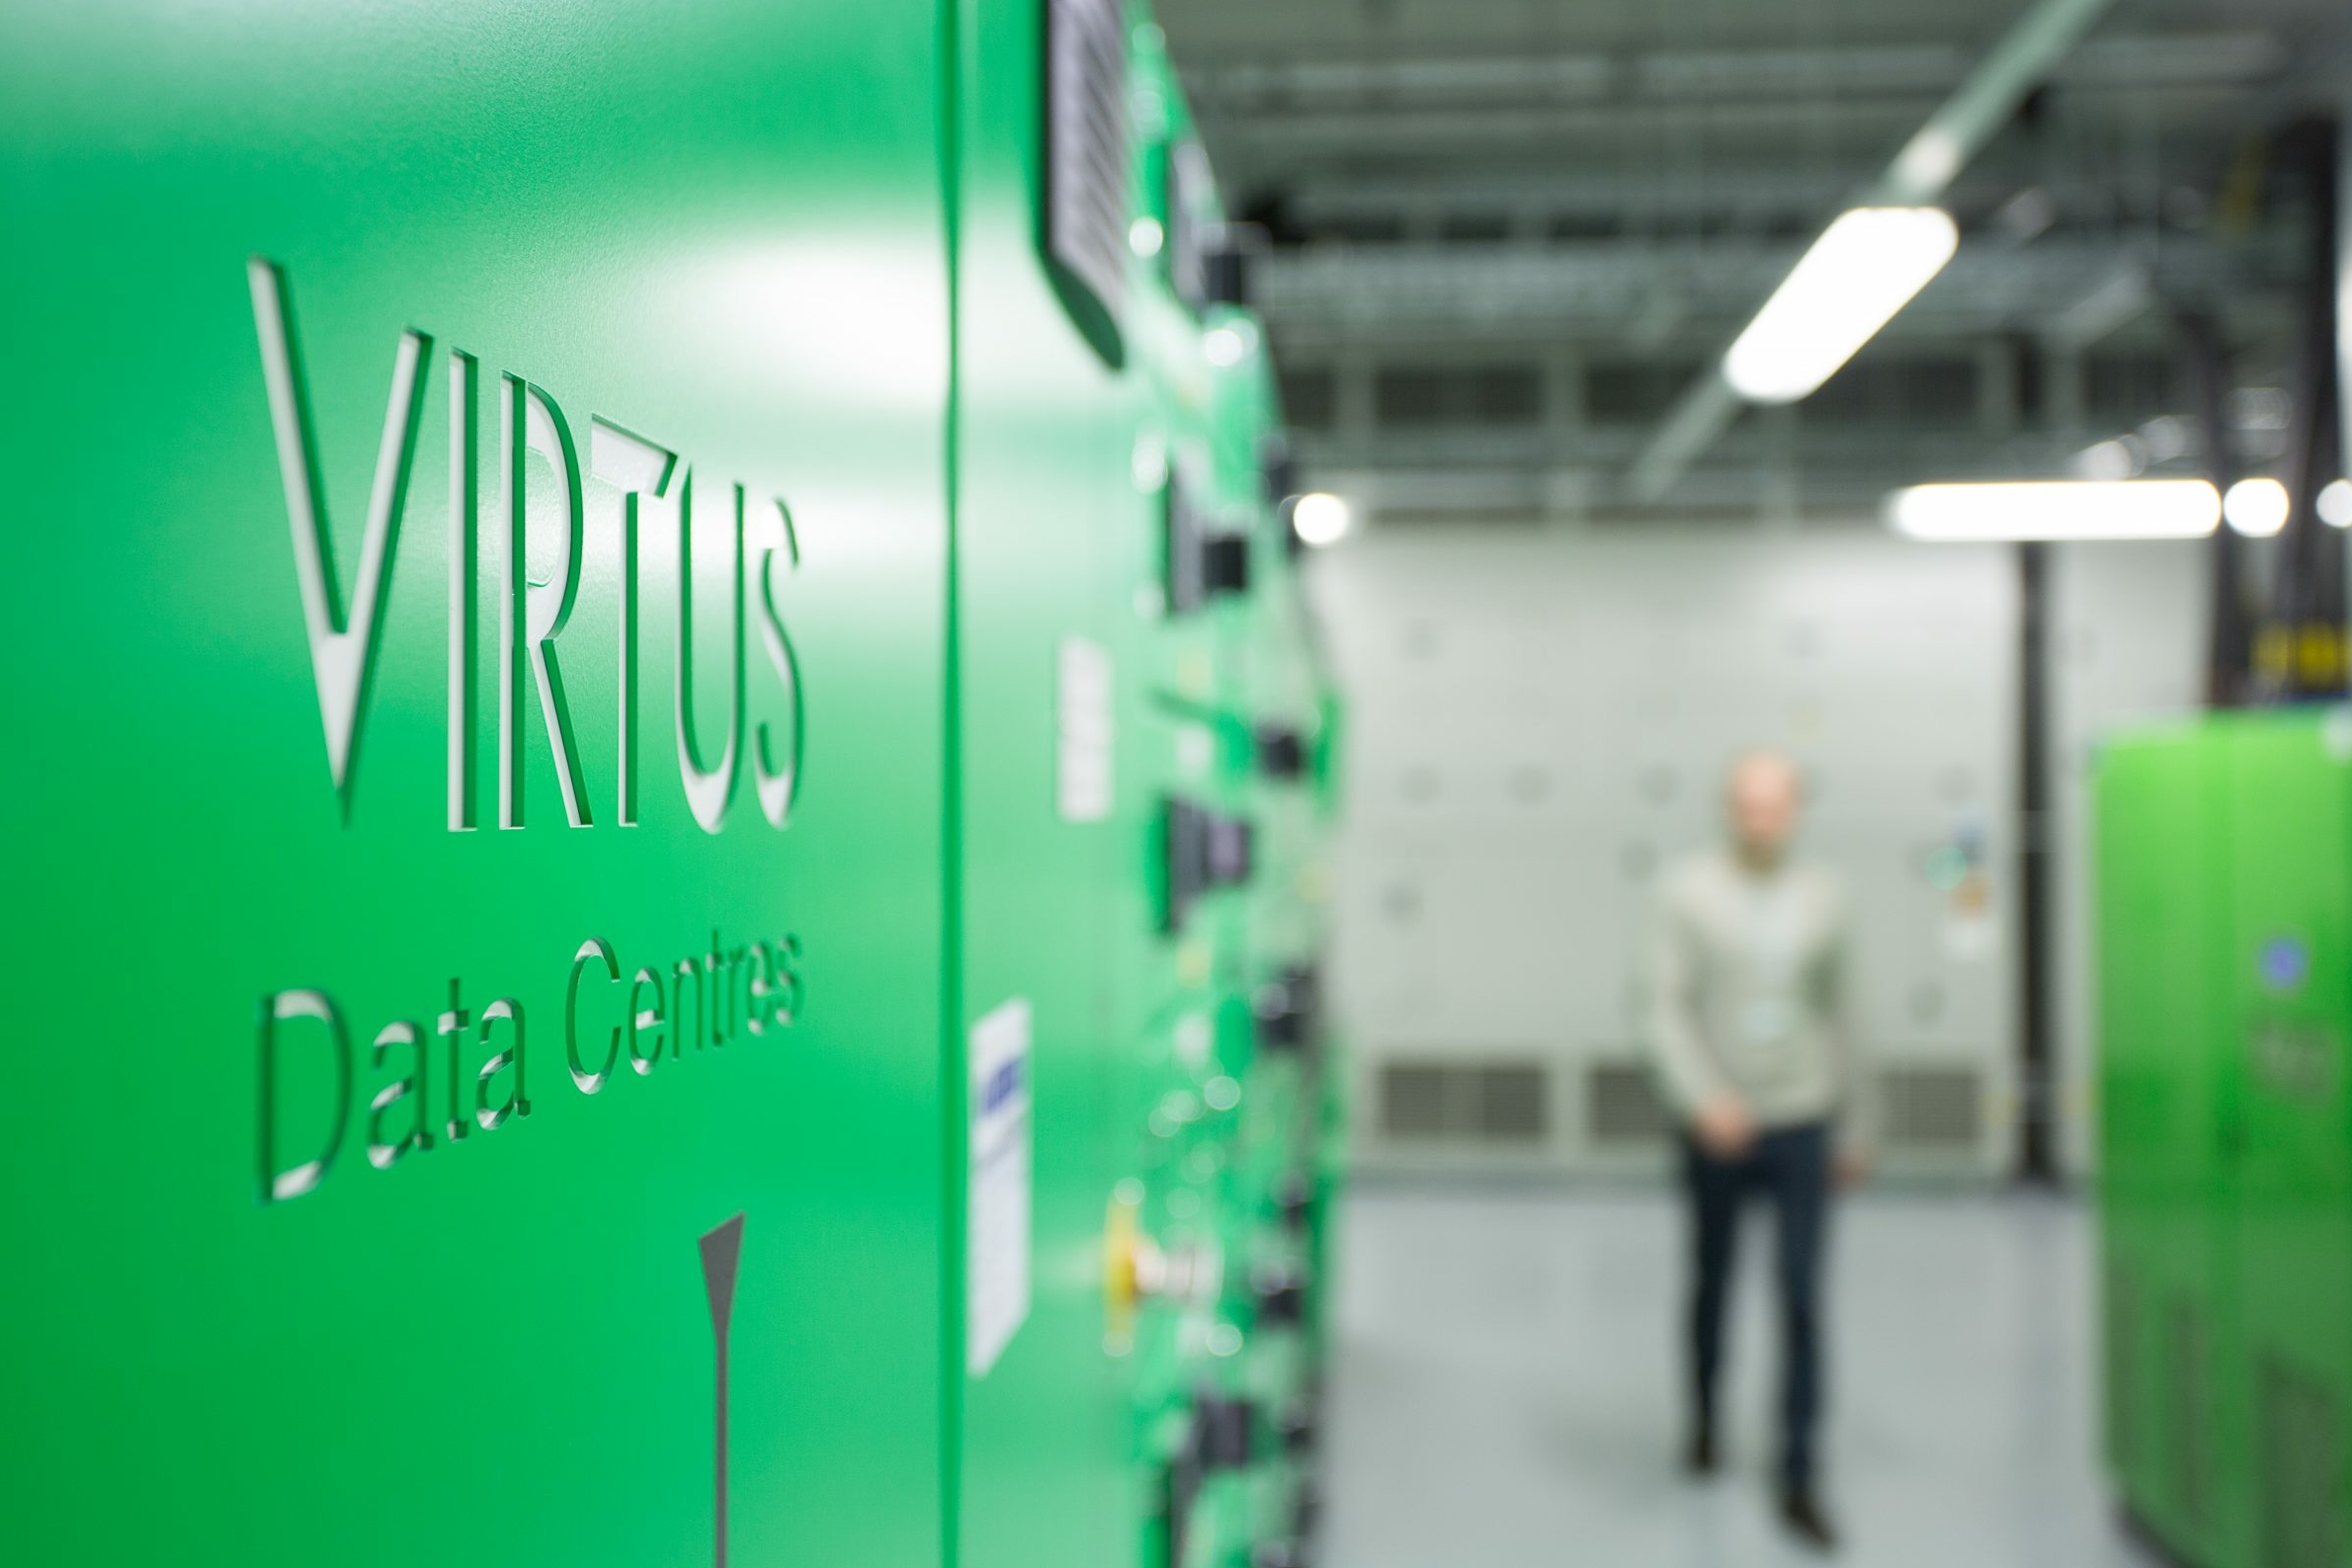 VIRTUS to build 50-acre data centre campus in Bucks